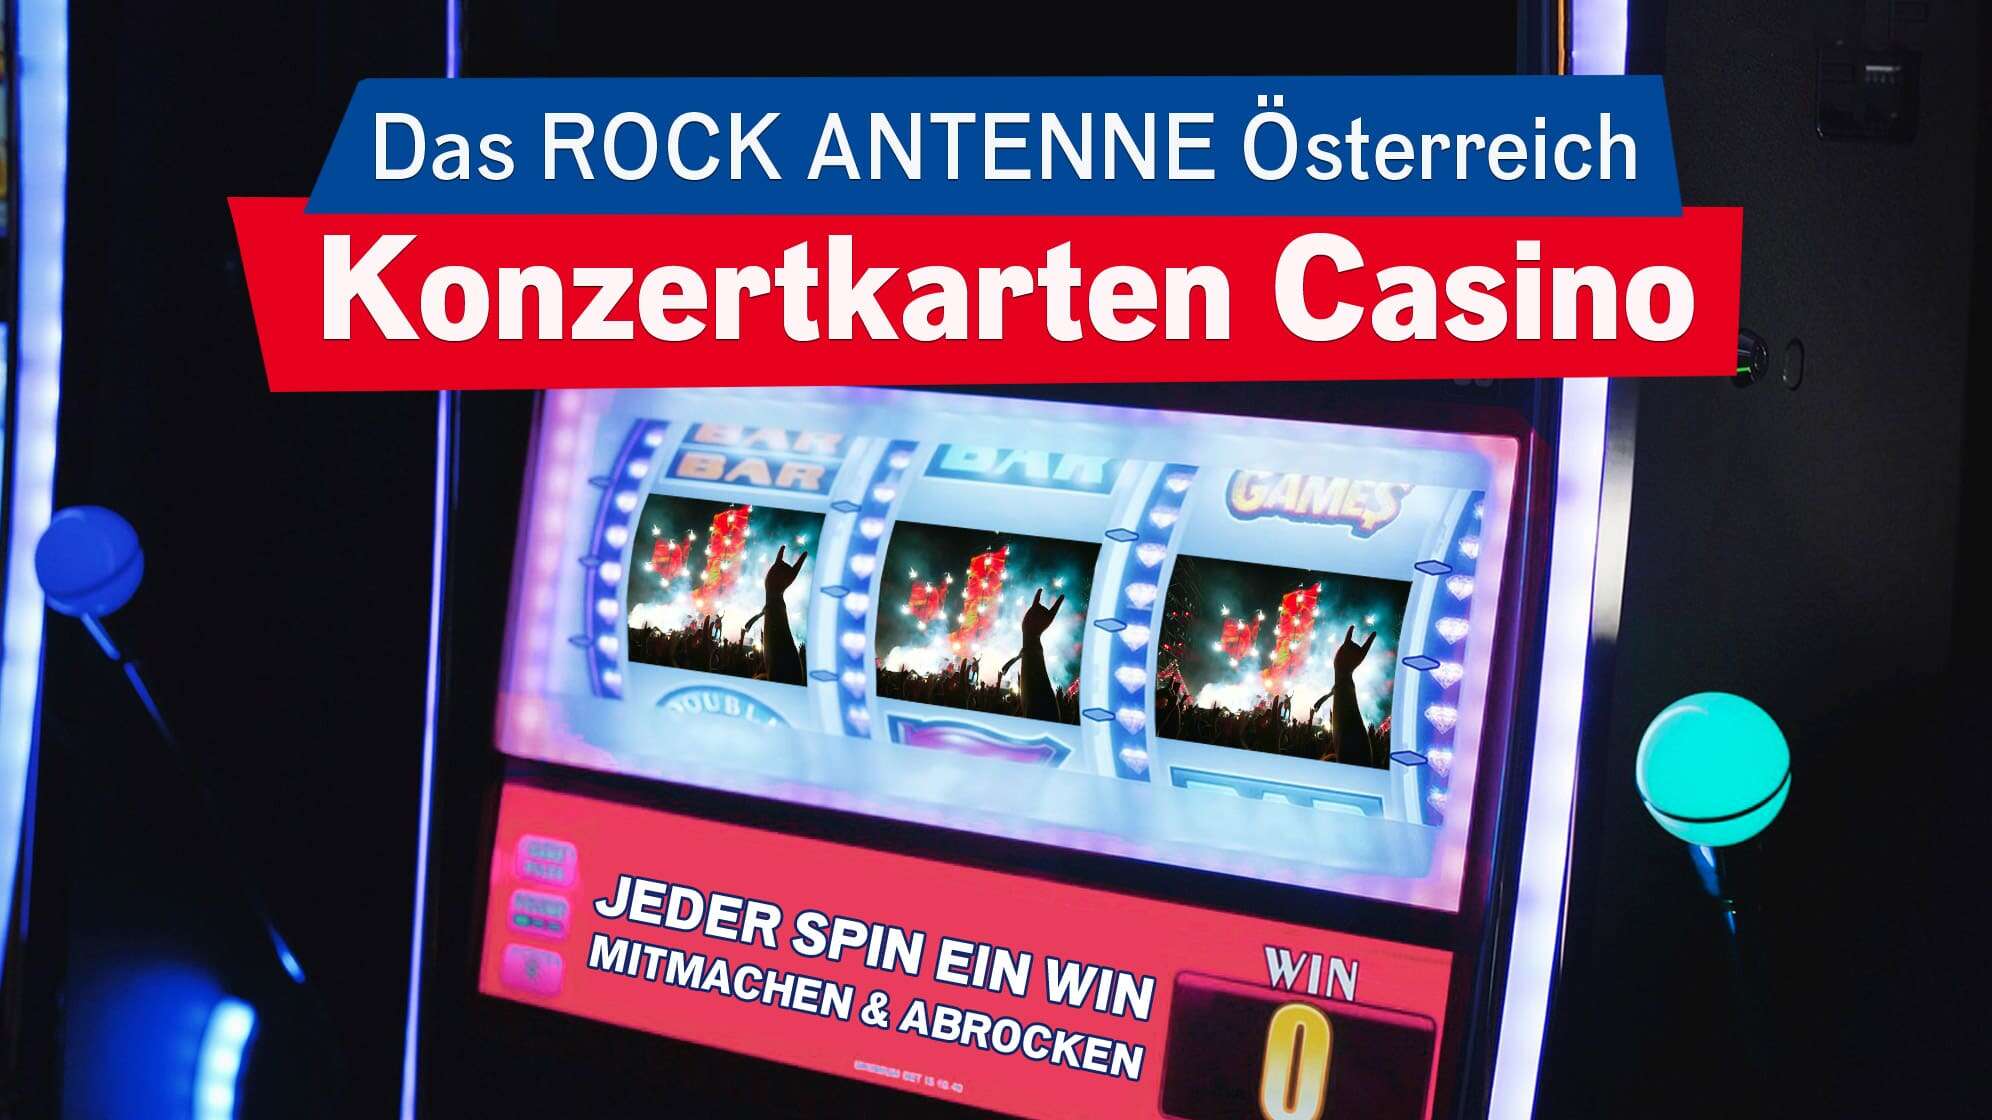 Nahaufnahme des Bildschirms eines Spielautomaten, darauf zu sehen sind drei Fotos von einem Konzert in einer Reihe, dazu der Text: Das ROCK ANTENNE Österreich Konzertkarten Casino - jeder Spin ein Win - mitmachen & abrocken